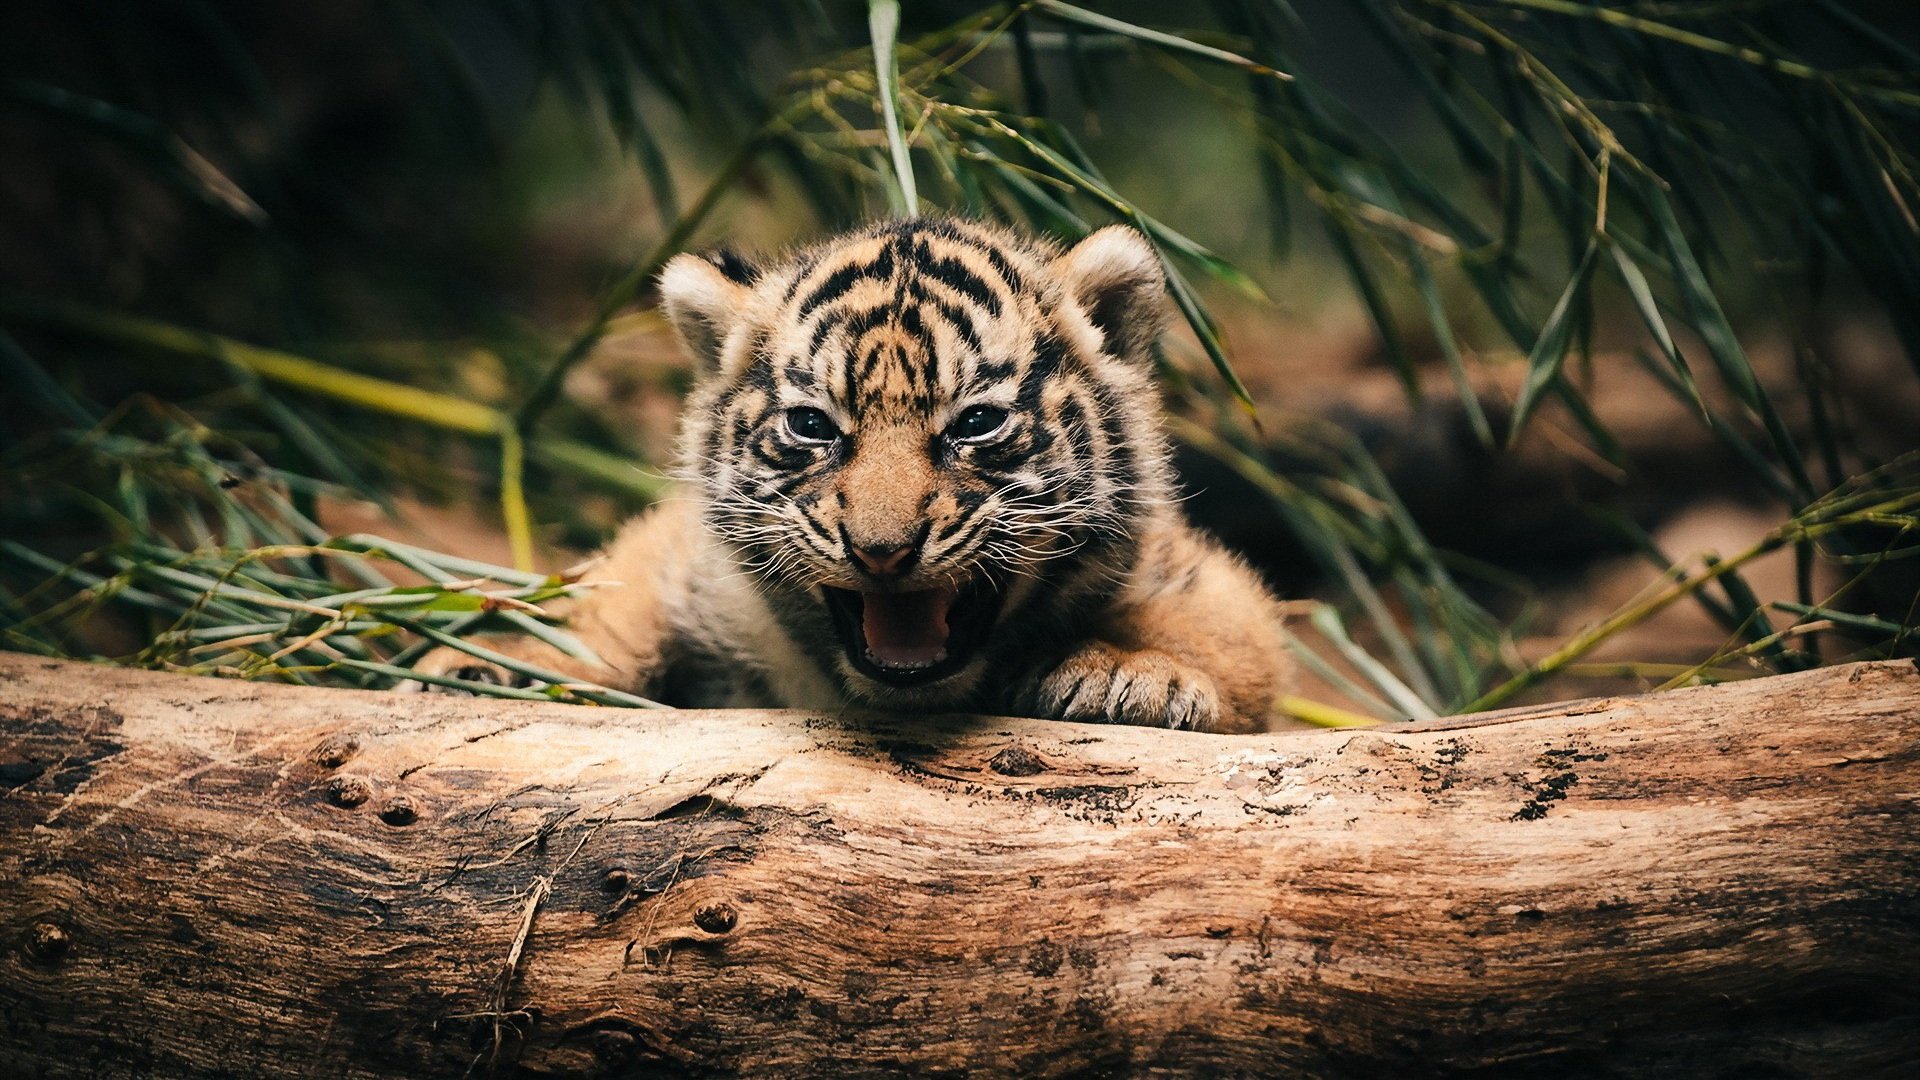 保护生态就是保护人类自己 盘点世界上仅存的6种老虎 老虎